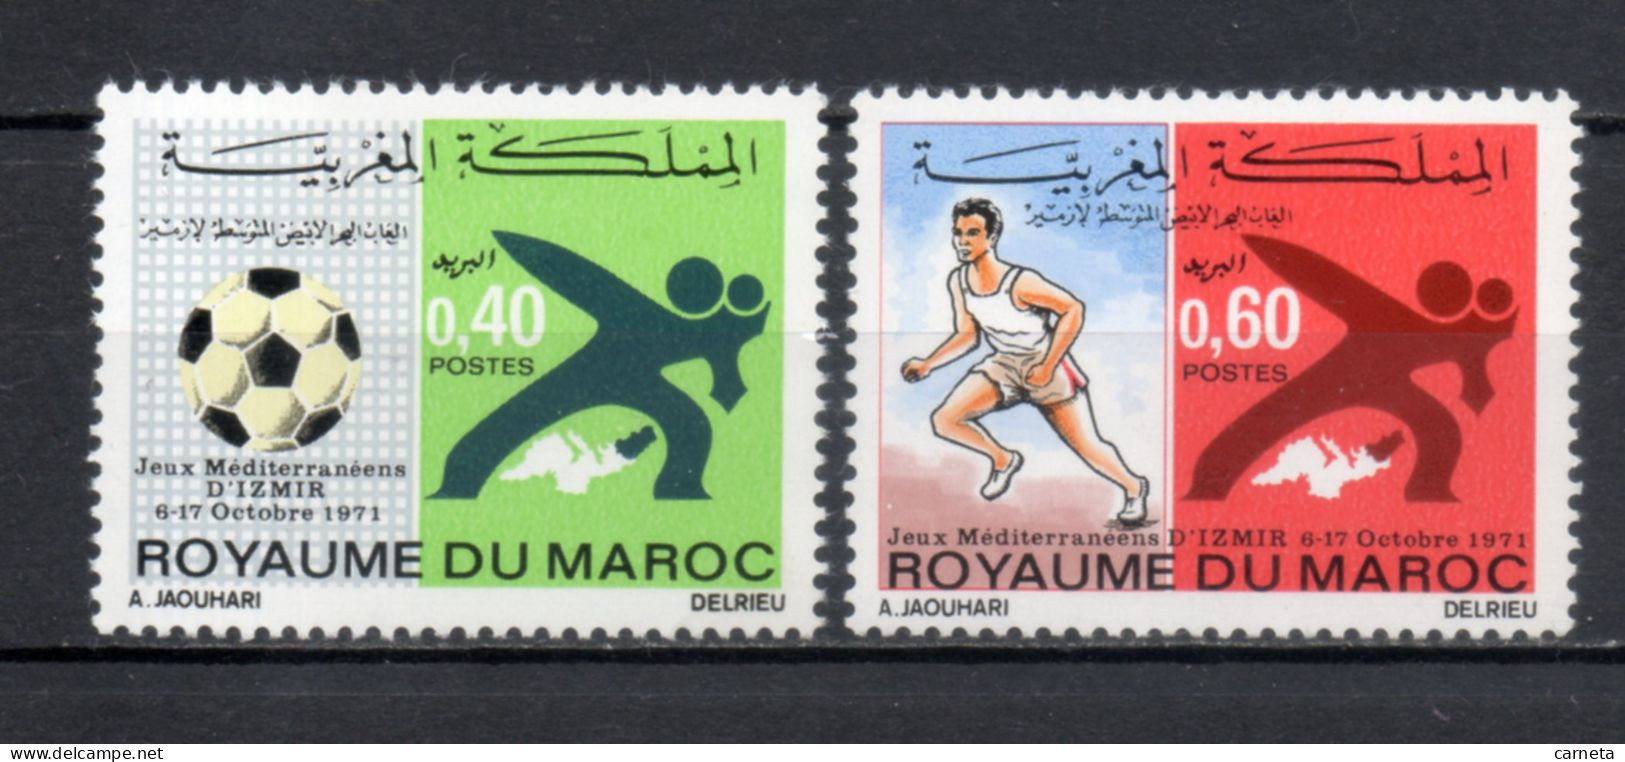 MAROC N°  625 + 626    NEUFS SANS CHARNIERE  COTE 2.00€  FOOTBALL JEUX SPORT - Marokko (1956-...)